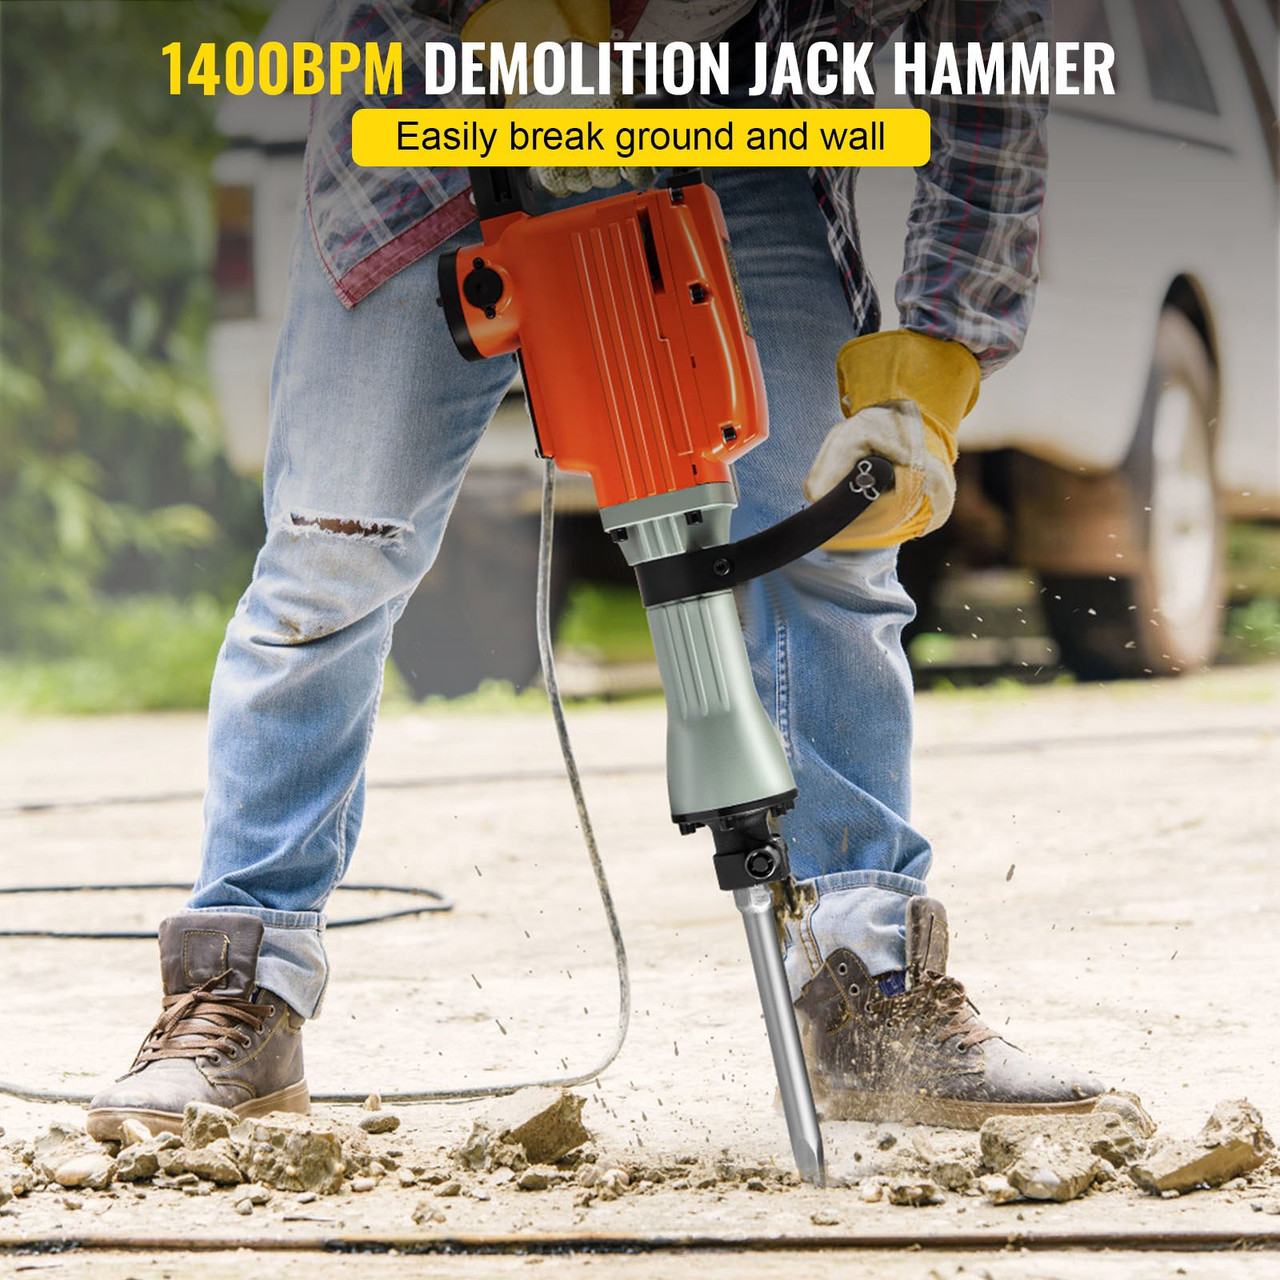 Industrial Electric Demolition Hammer Concrete Breaker 3600W Jack Hammer  1400 BPM Heavy Duty, 4pcs Chisels Bit